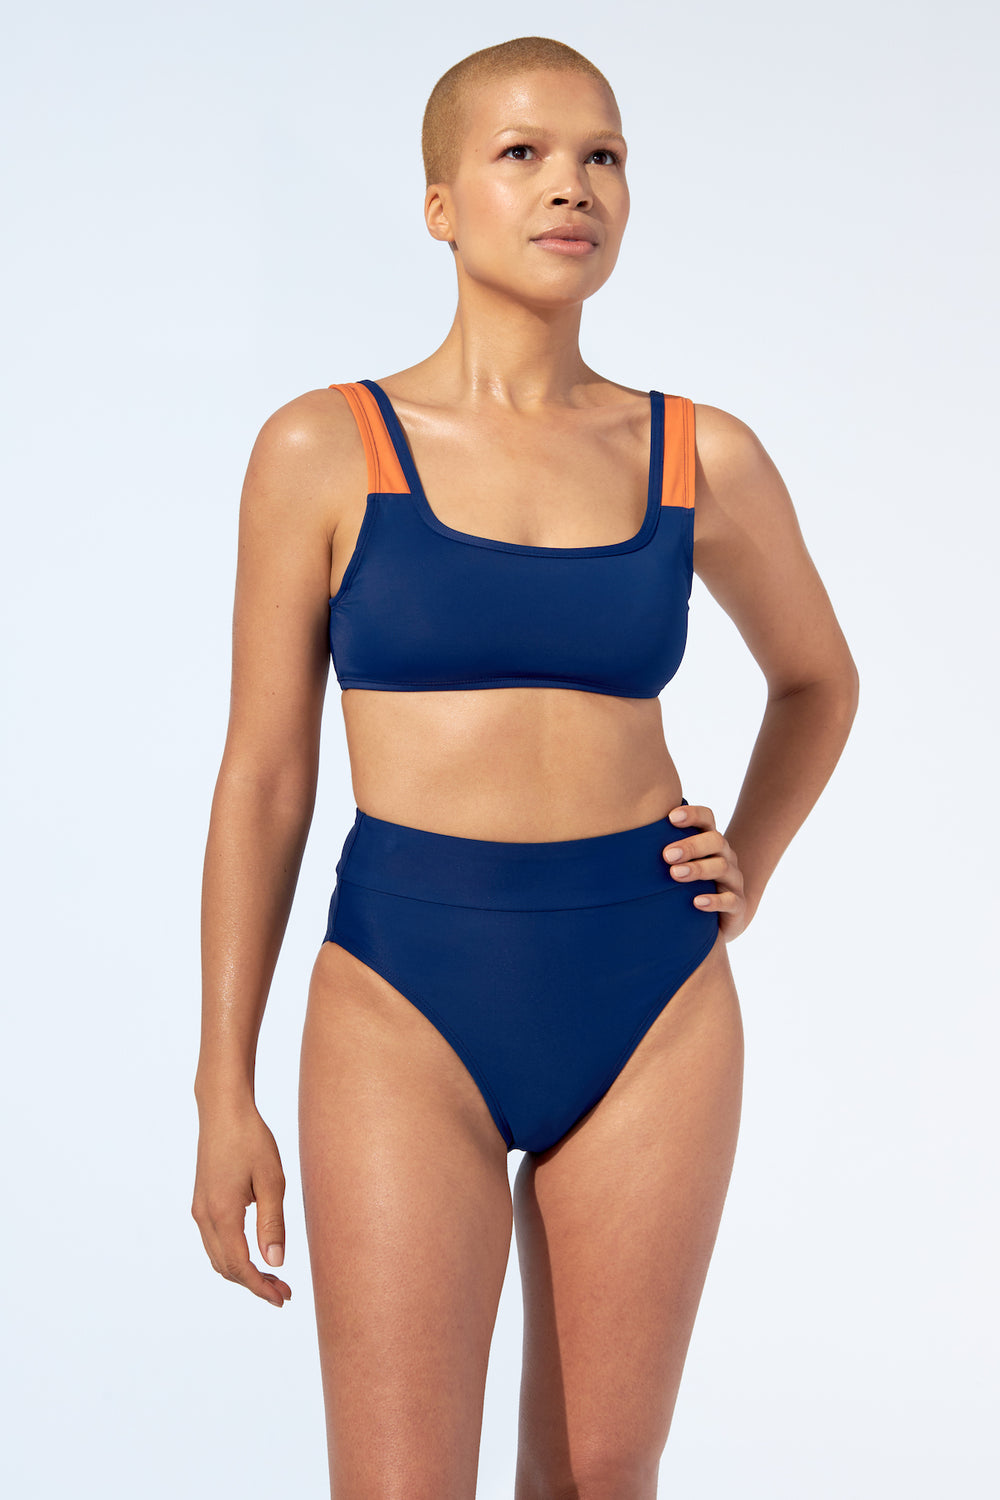 GABRIELLE - Bikini Top in Night blue - Selfish swimwear Top